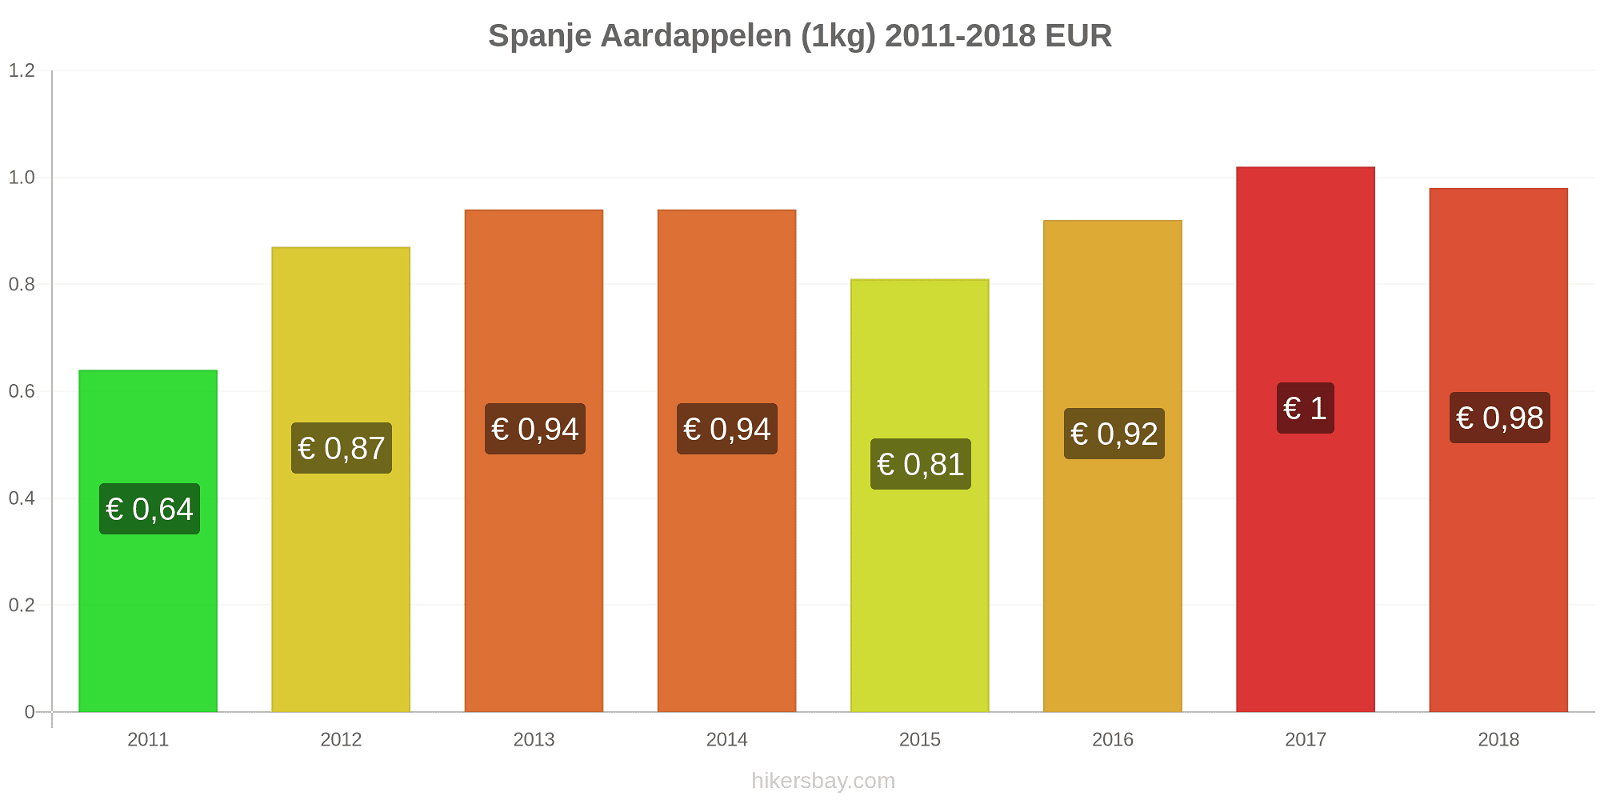 Spanje prijswijzigingen Aardappelen (1kg) hikersbay.com